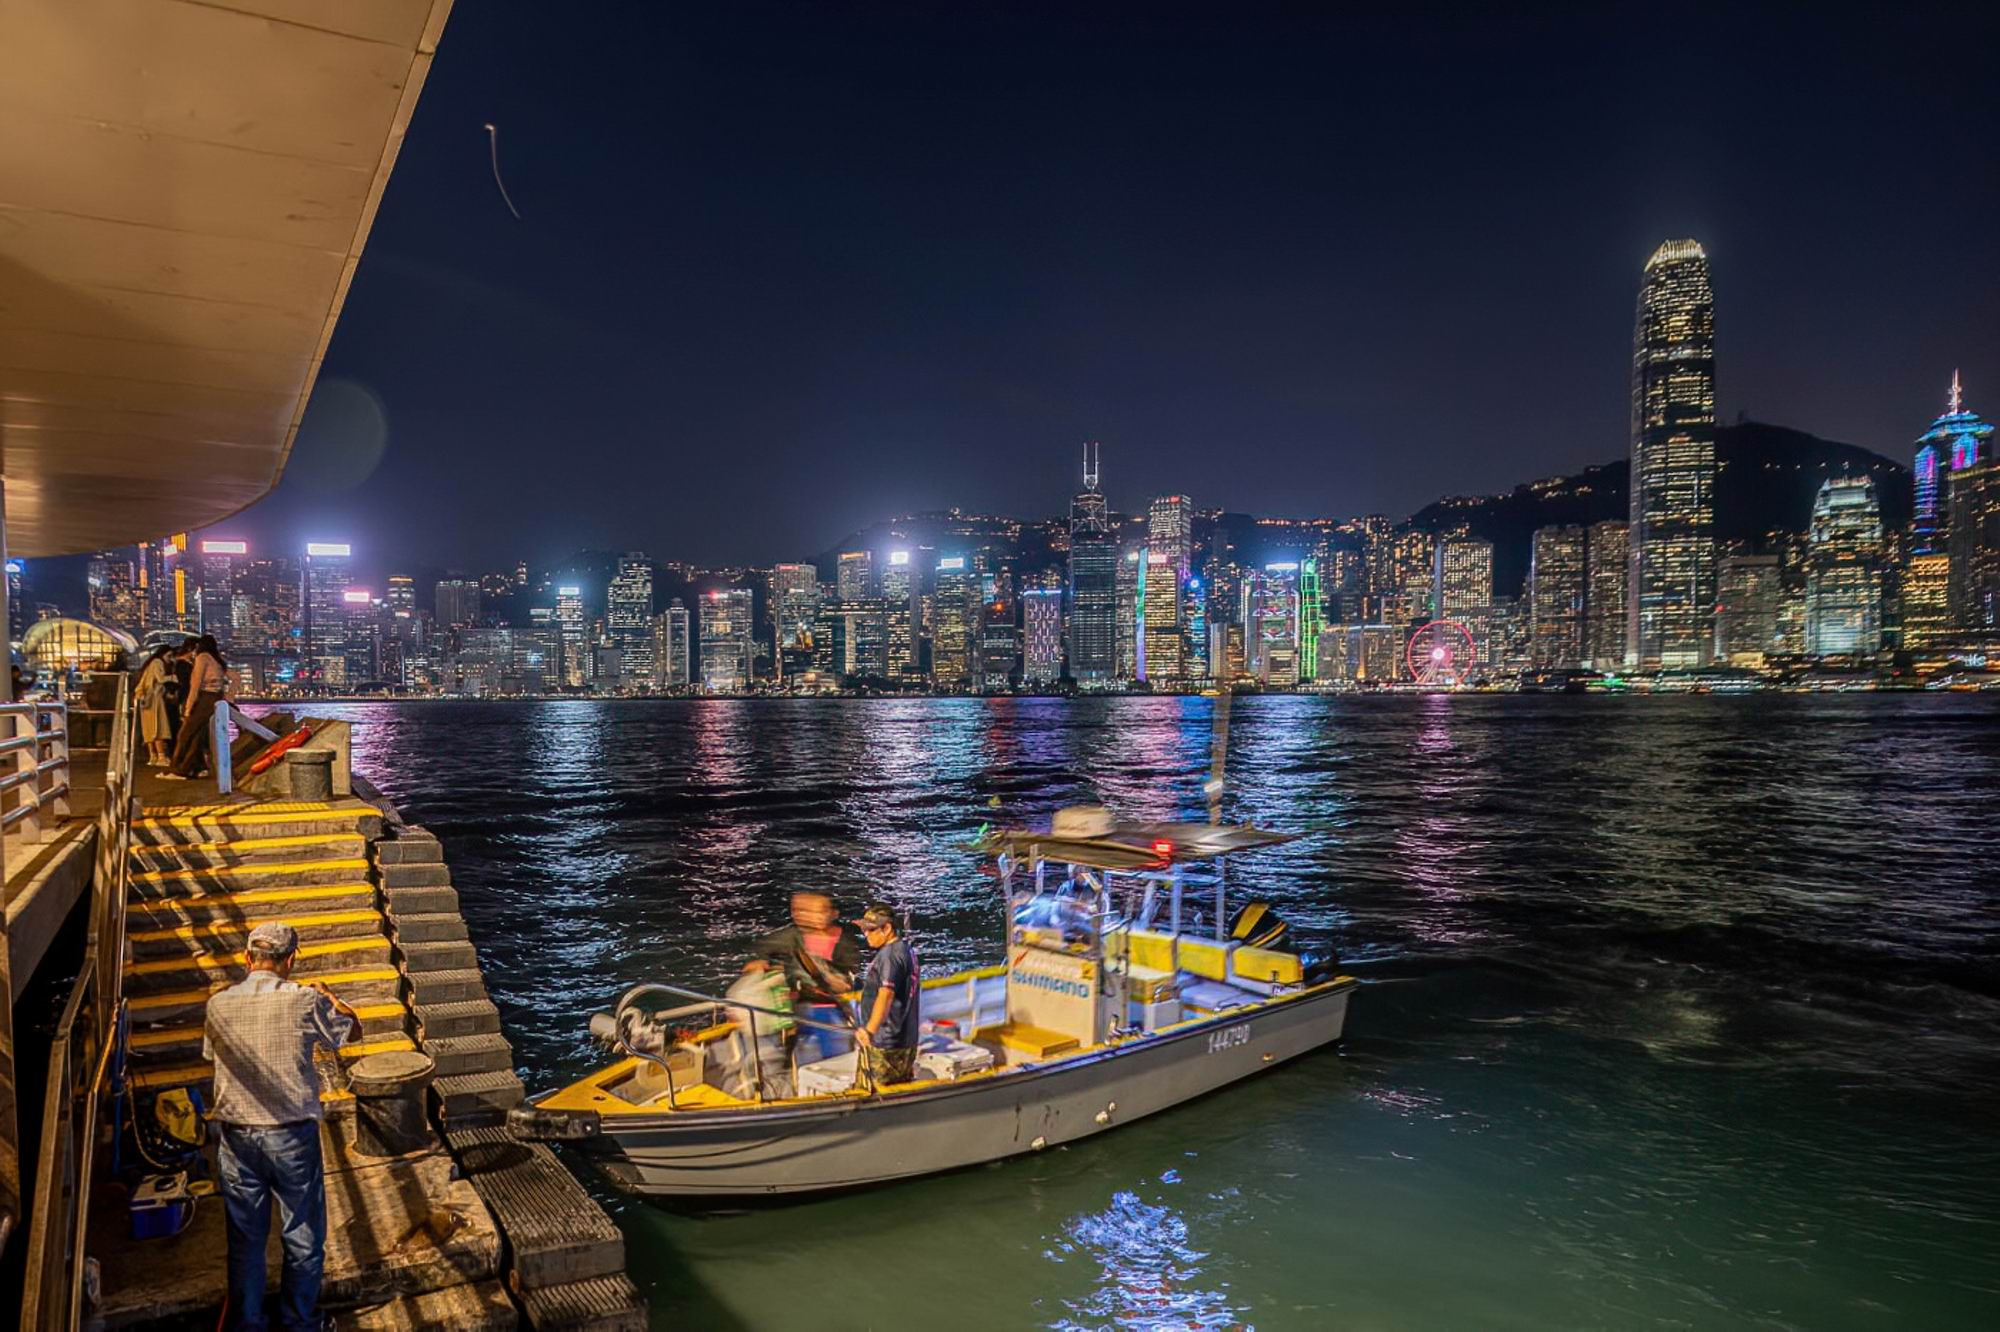 005_夜色中的香港海岸  Night in HongKong Harbor.jpg